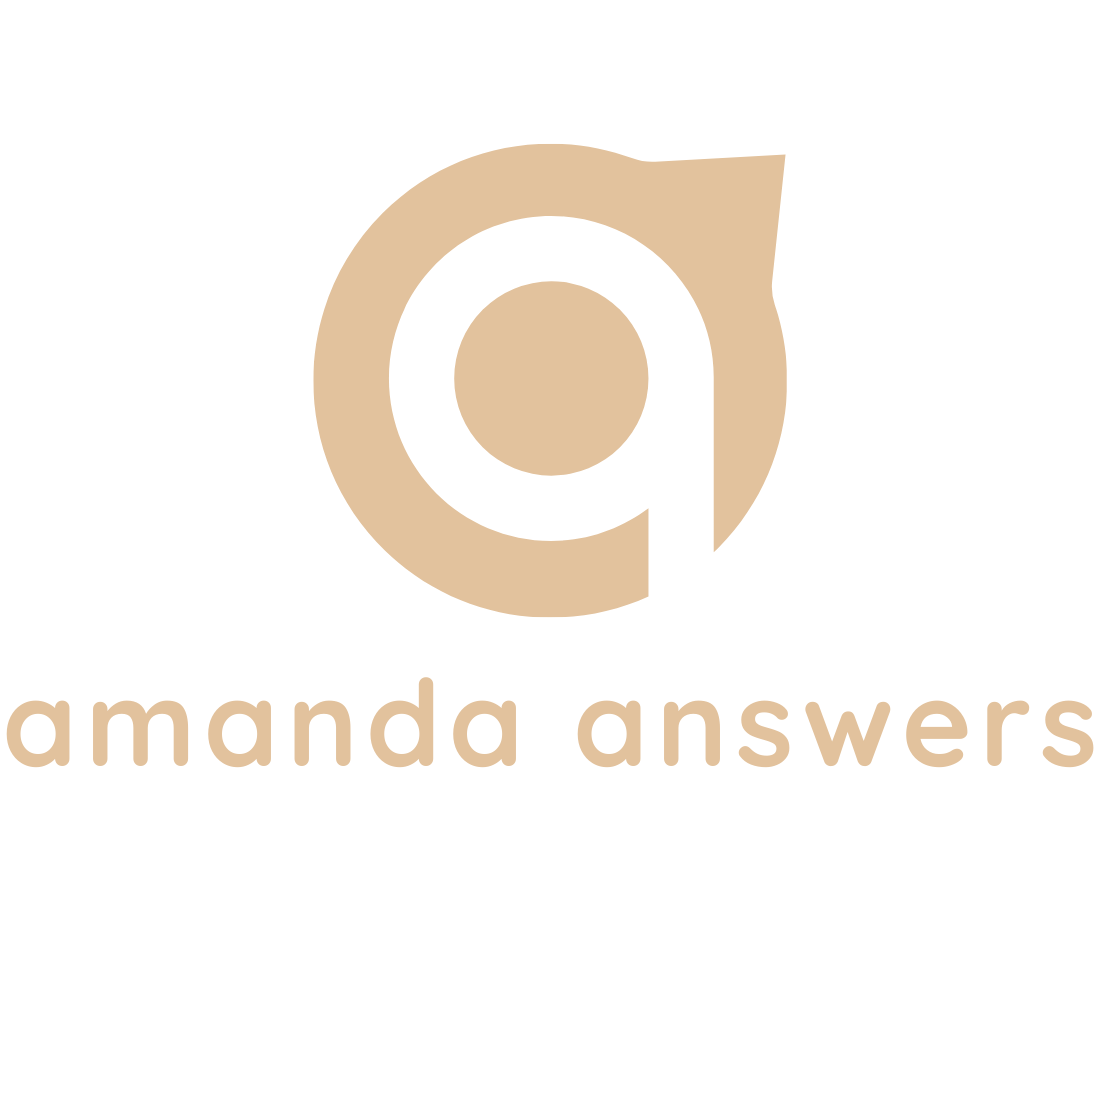 amanda answers logo with words white background